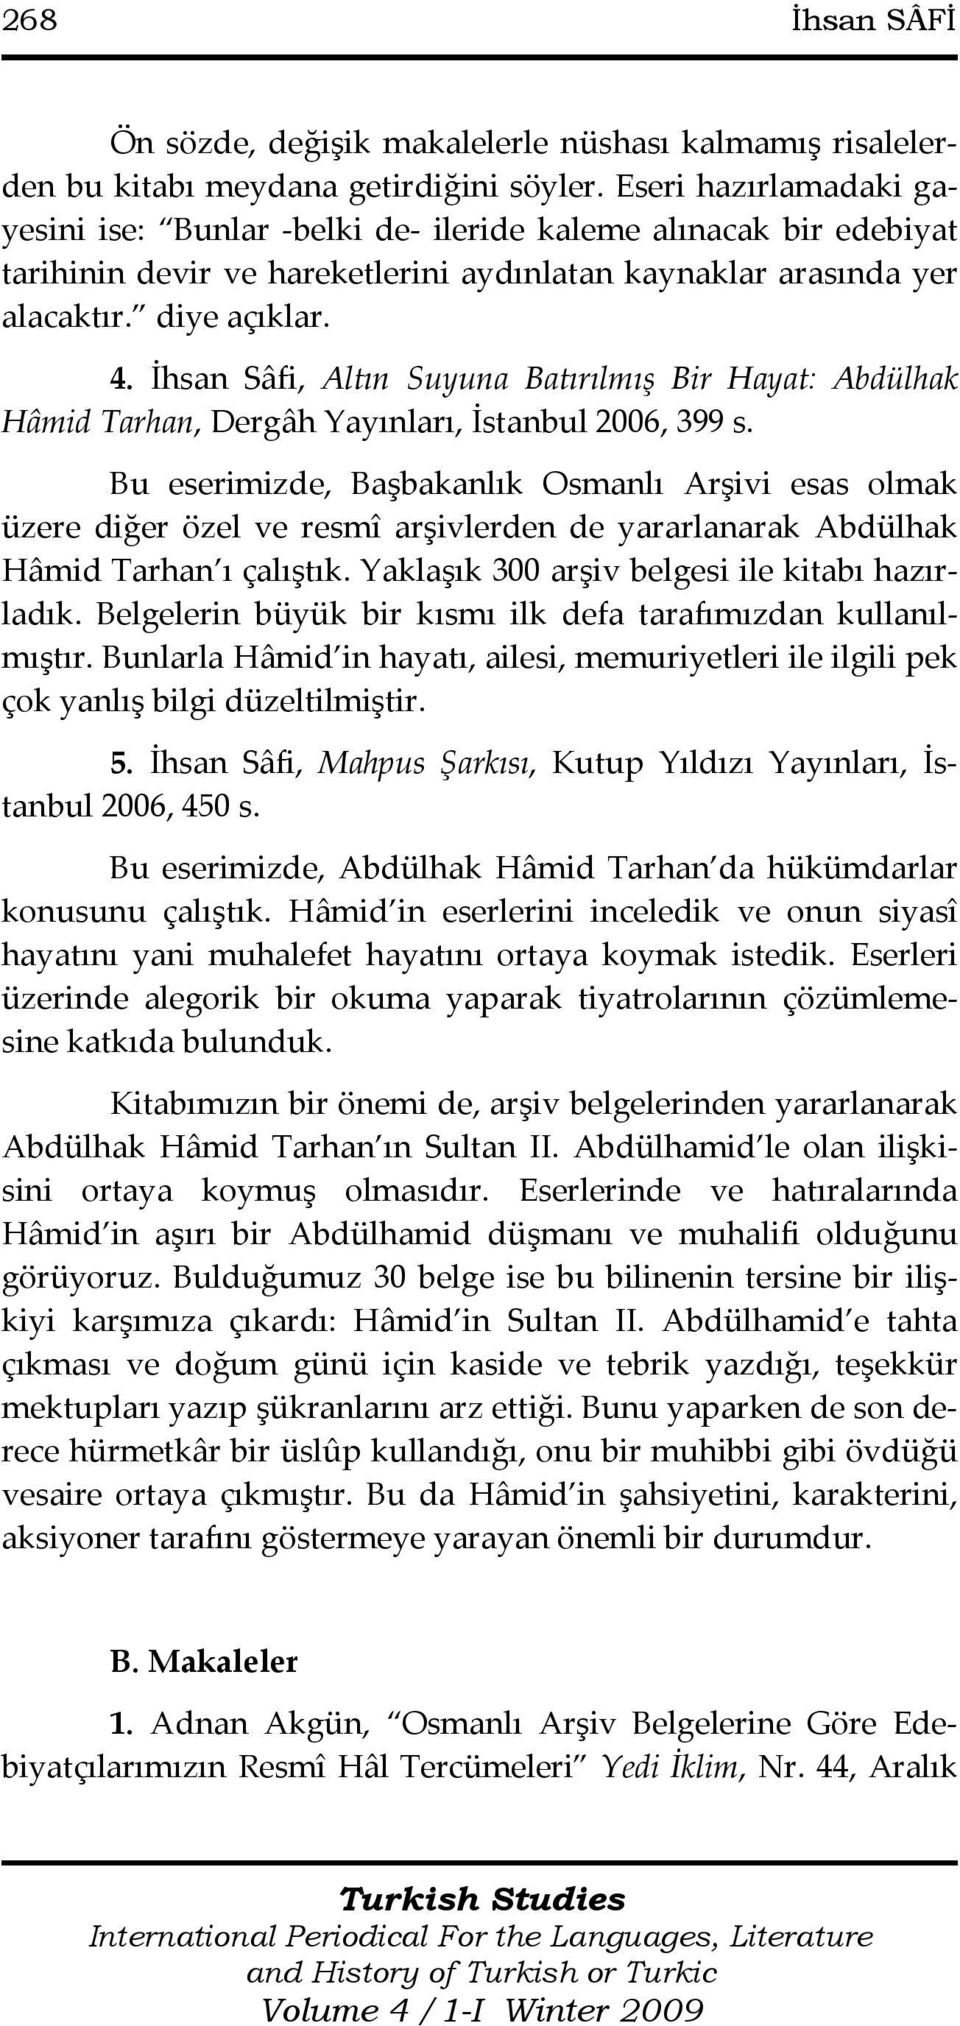 İhsan Sâfi, Altın Suyuna Batırılmış Bir Hayat: Abdülhak Hâmid Tarhan, Dergâh Yayınları, İstanbul 2006, 399 s.